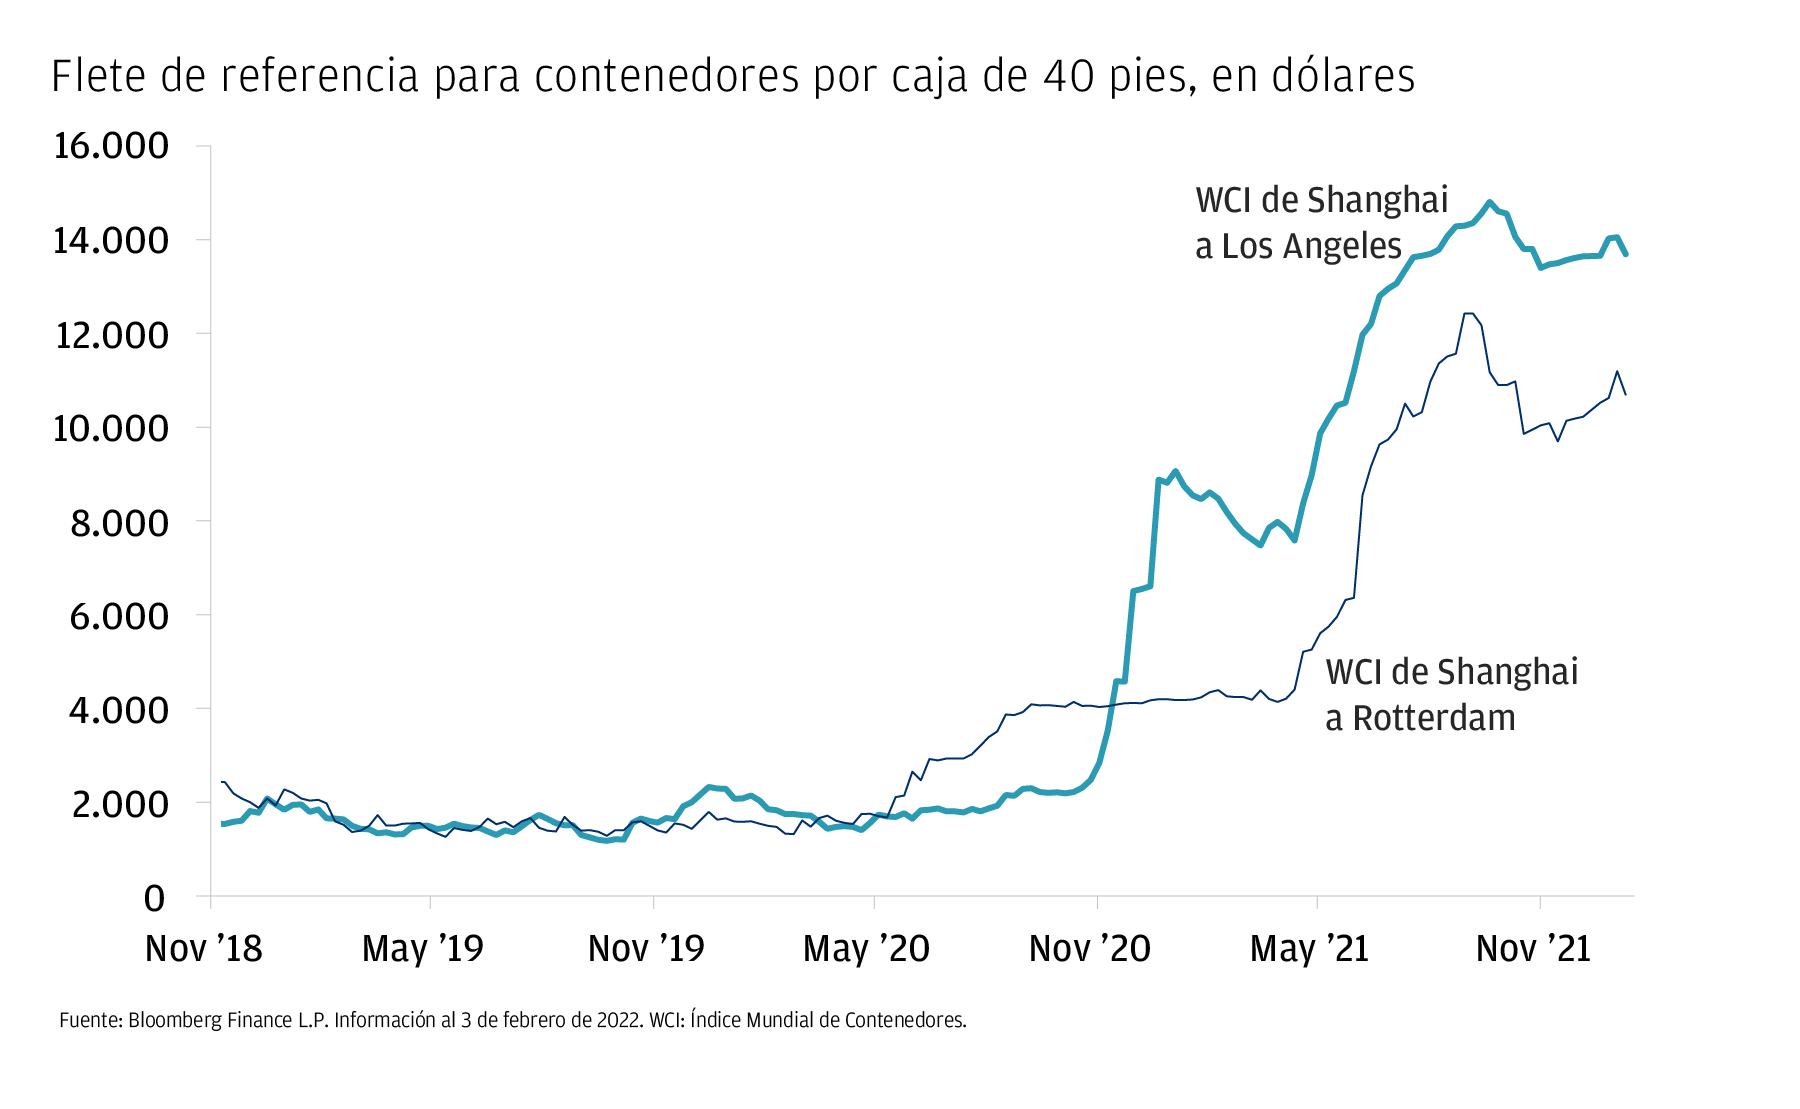 El gráfico muestra los costews de envío para el flete de contenedores por caja de 40 pies, medido en dólares, entre noviembre de 2018 y noviembre de 2021. El valor de referencia, tanto para los WCI de Shangai a Los Ángeles como a Rotterdam, arranca en torno a los 2.000 dólares y oscila de manera estable y poco pronunciada hasta el Segundo semester de 2020, cuando empieza a subir. En noviembre 2021, el WCI de Shangai a Rotterdam se sitúa por encima de los 10.000 dólares y el WCI de Shangai a Los Ángeles en torno a los 14.000. 